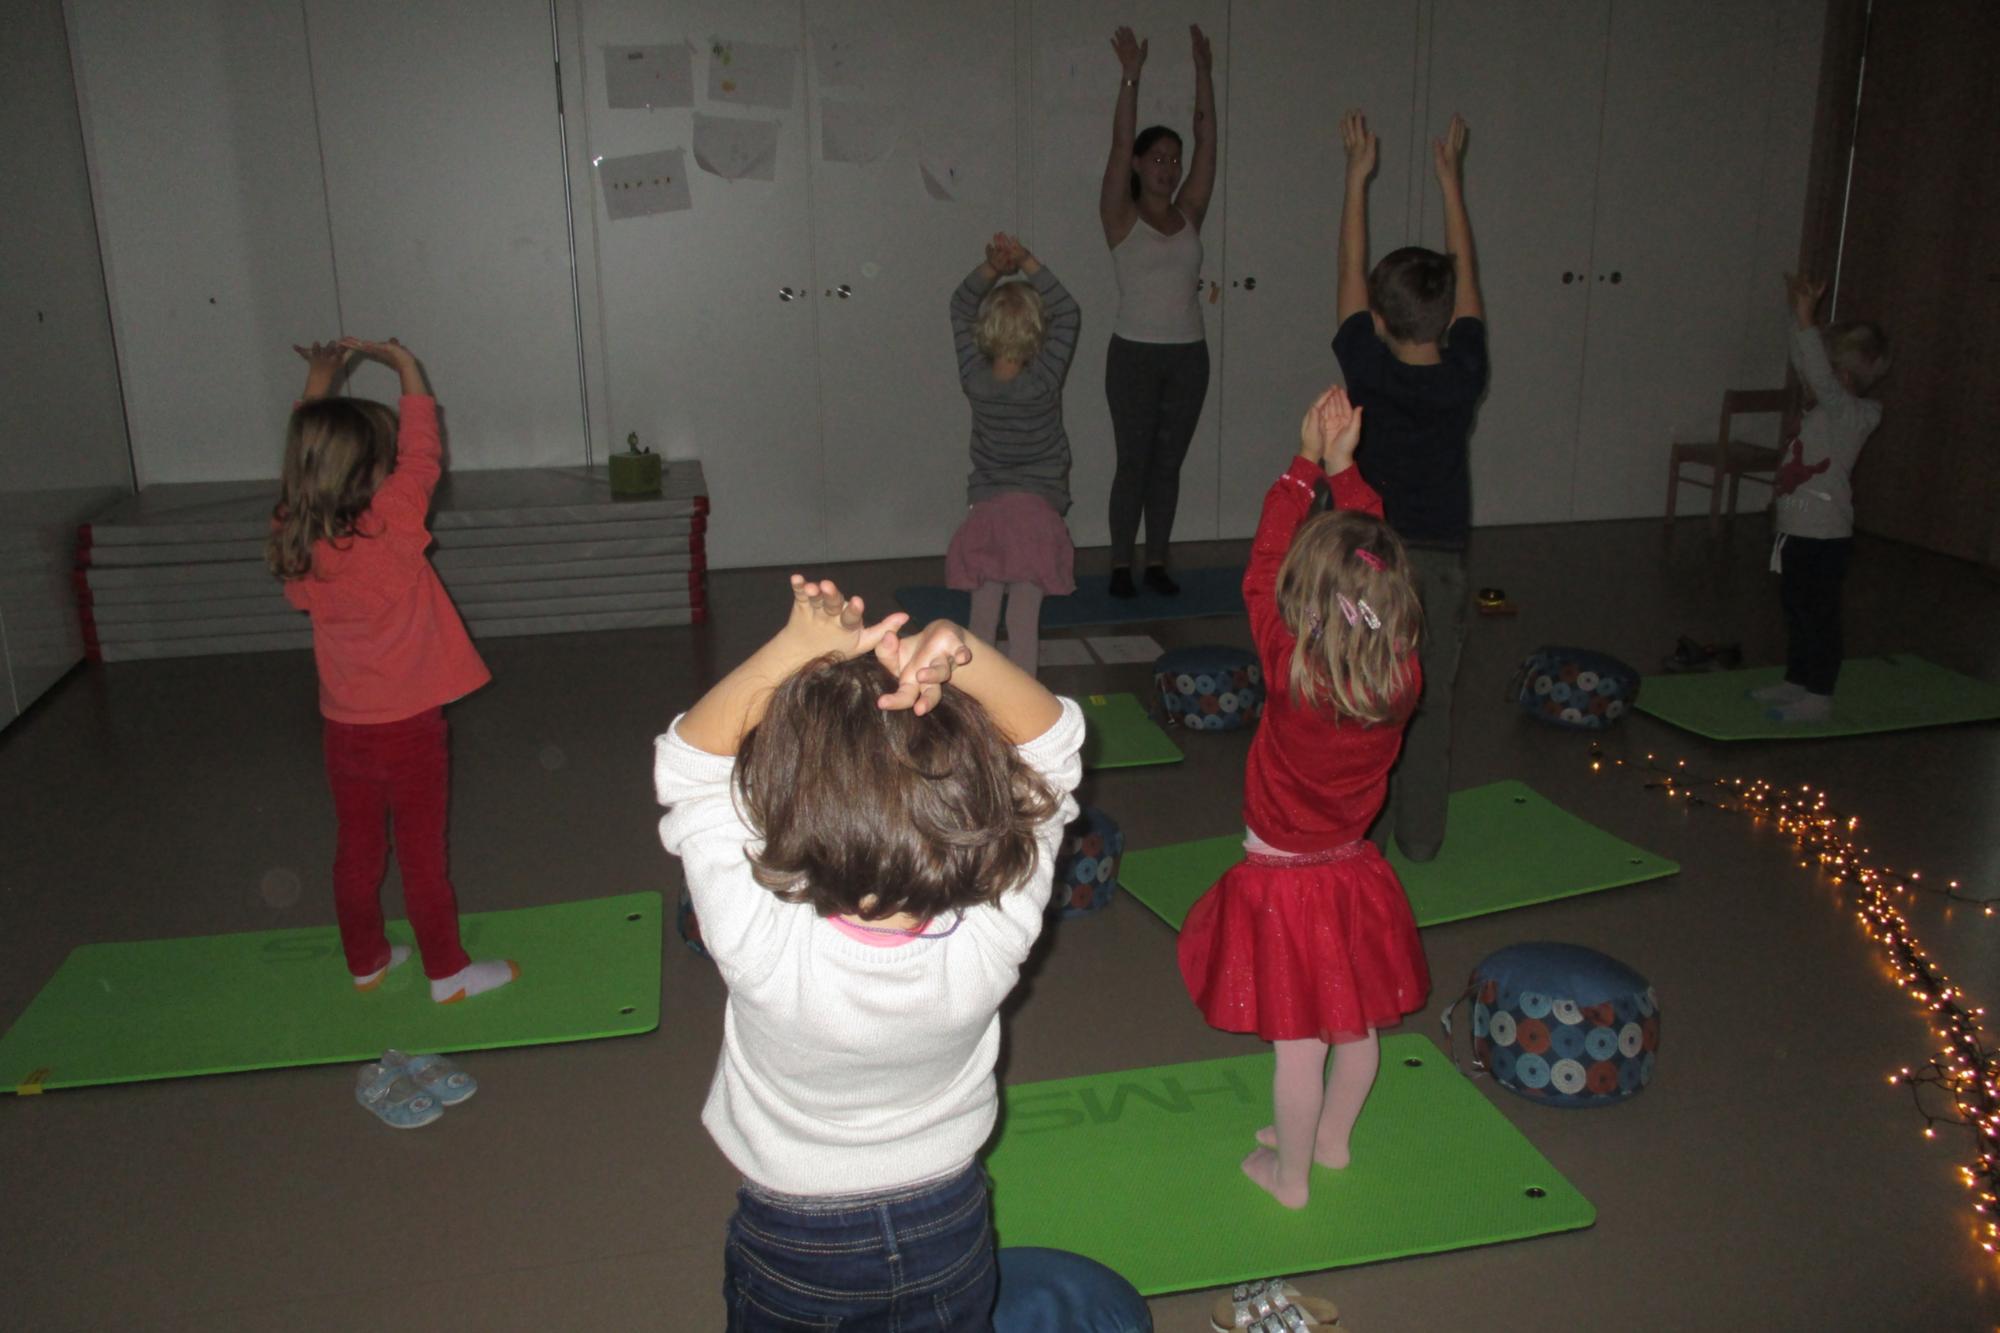 Yoga mit Kindern